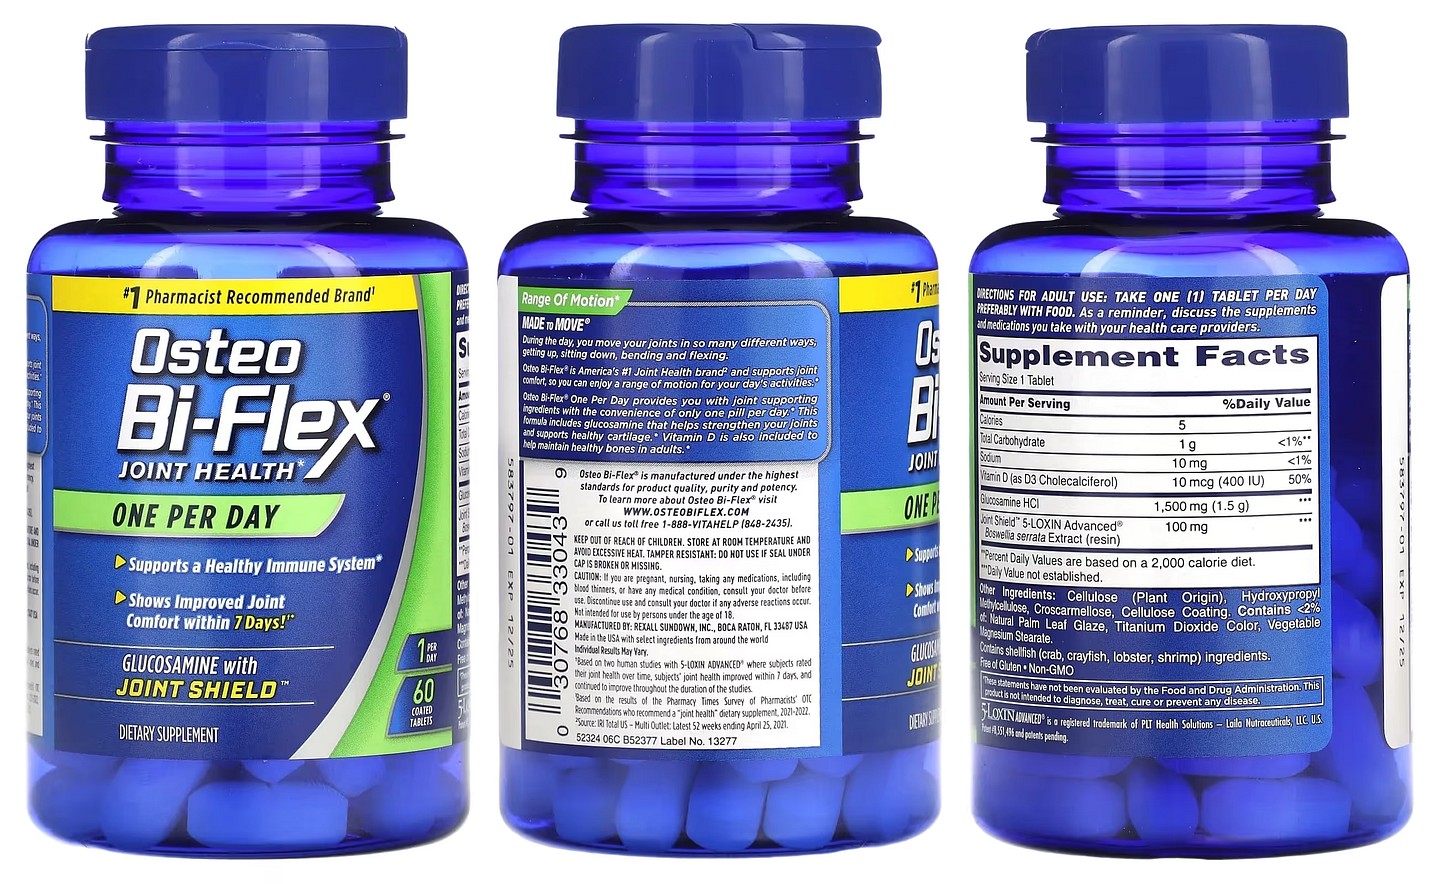 Osteo Bi-Flex, Joint Health packaging